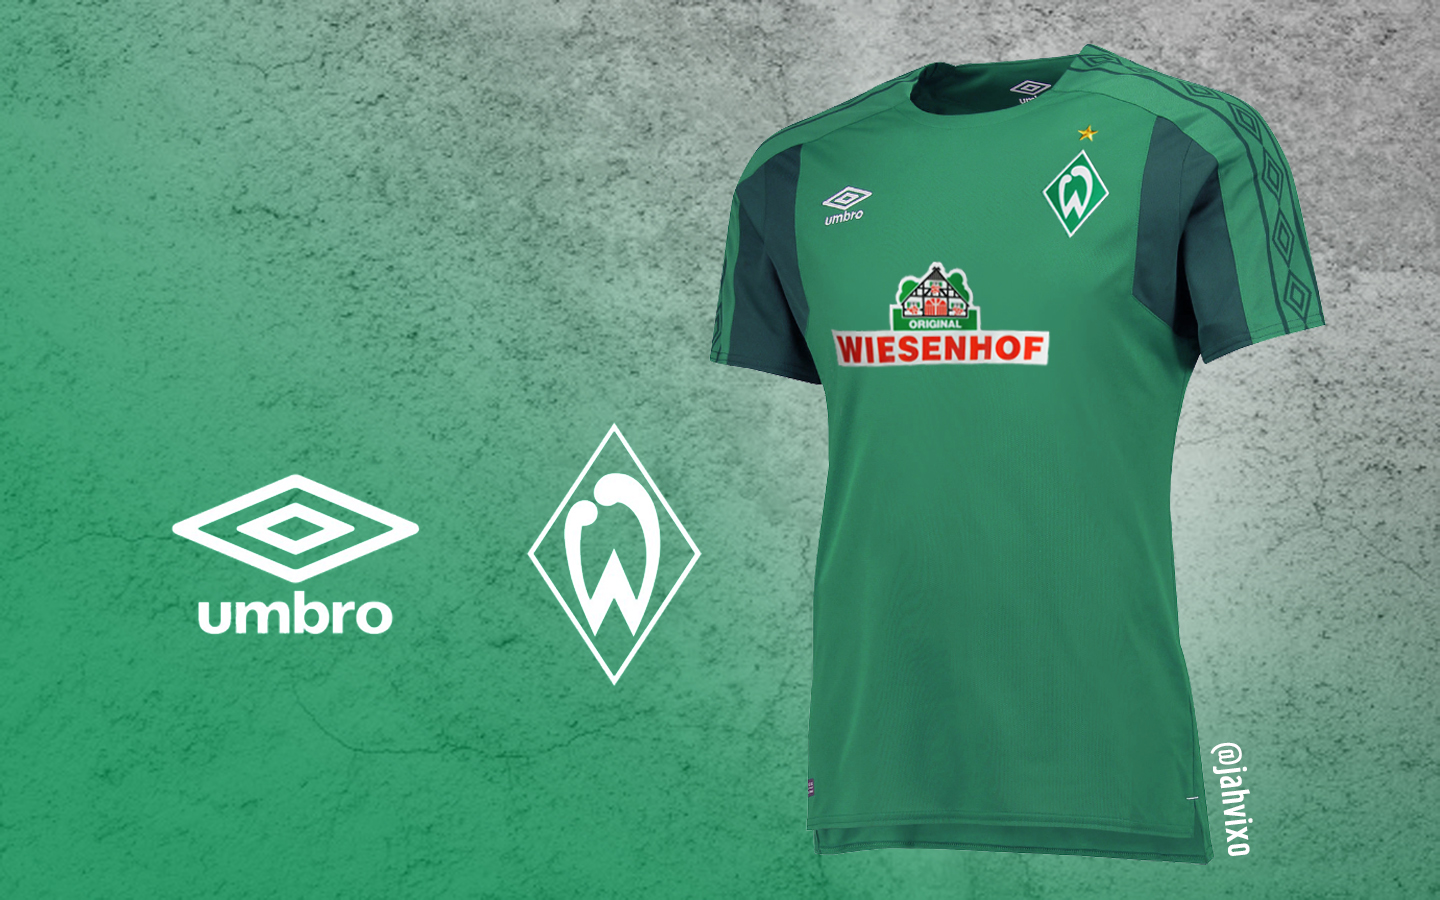 Werder Bremen Umbro - Umbro Werder Bremen Jersey - HD Wallpaper 